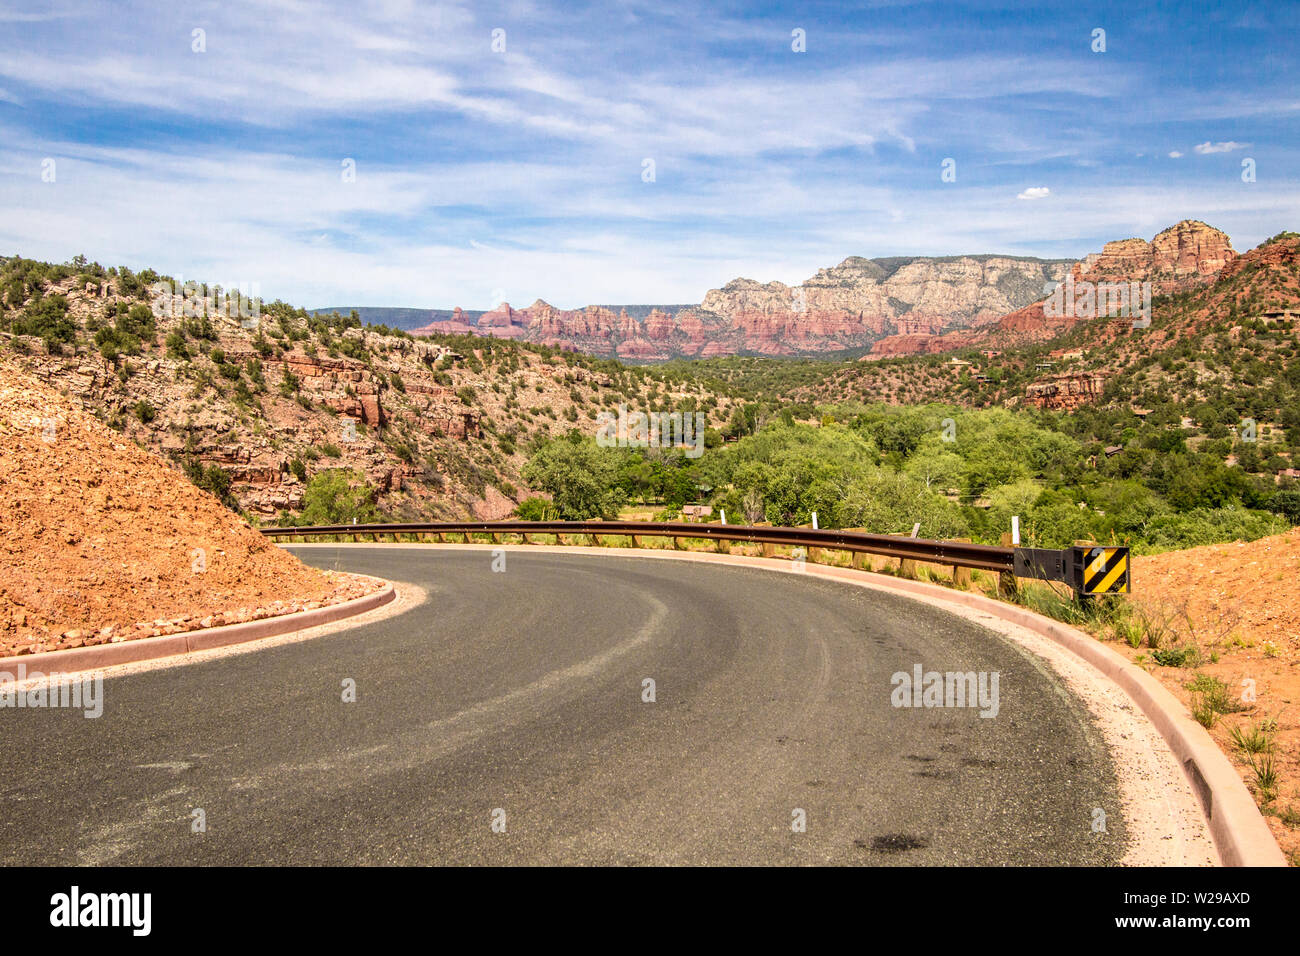 Sedona Arizona. Haarnadelkurve auf der kurvenreichen Bergstraße durch die atemberaubende Landschaft von Bergen und Butten aus rotem Felssandstein. Stockfoto